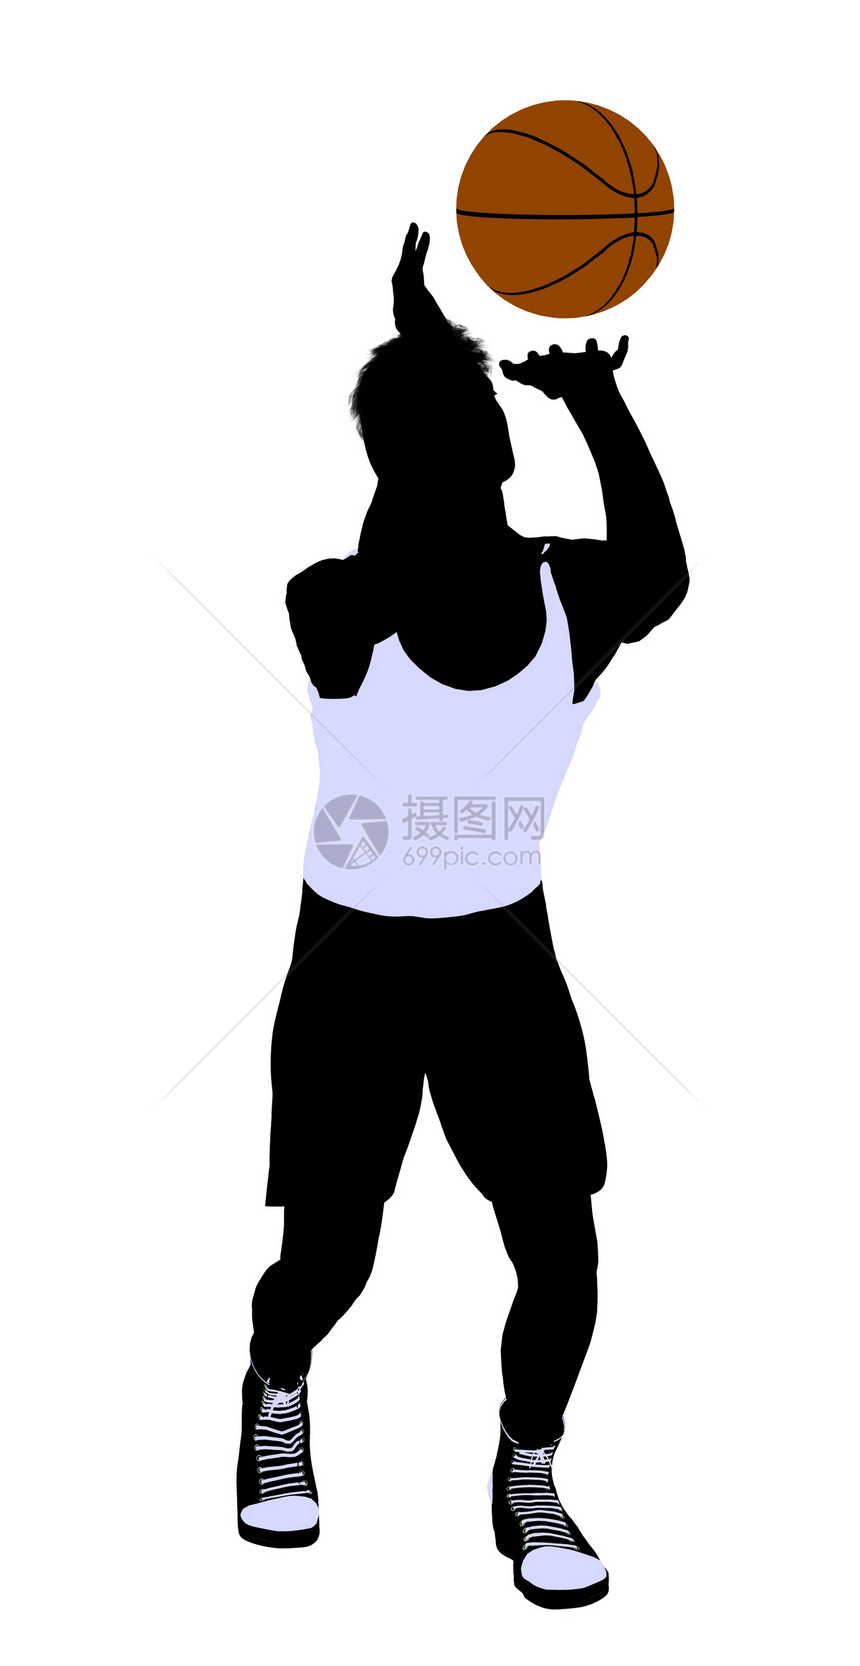 男性篮球玩家 I 说明 Silhouette运动插图剪影团队男生男人棕球图片